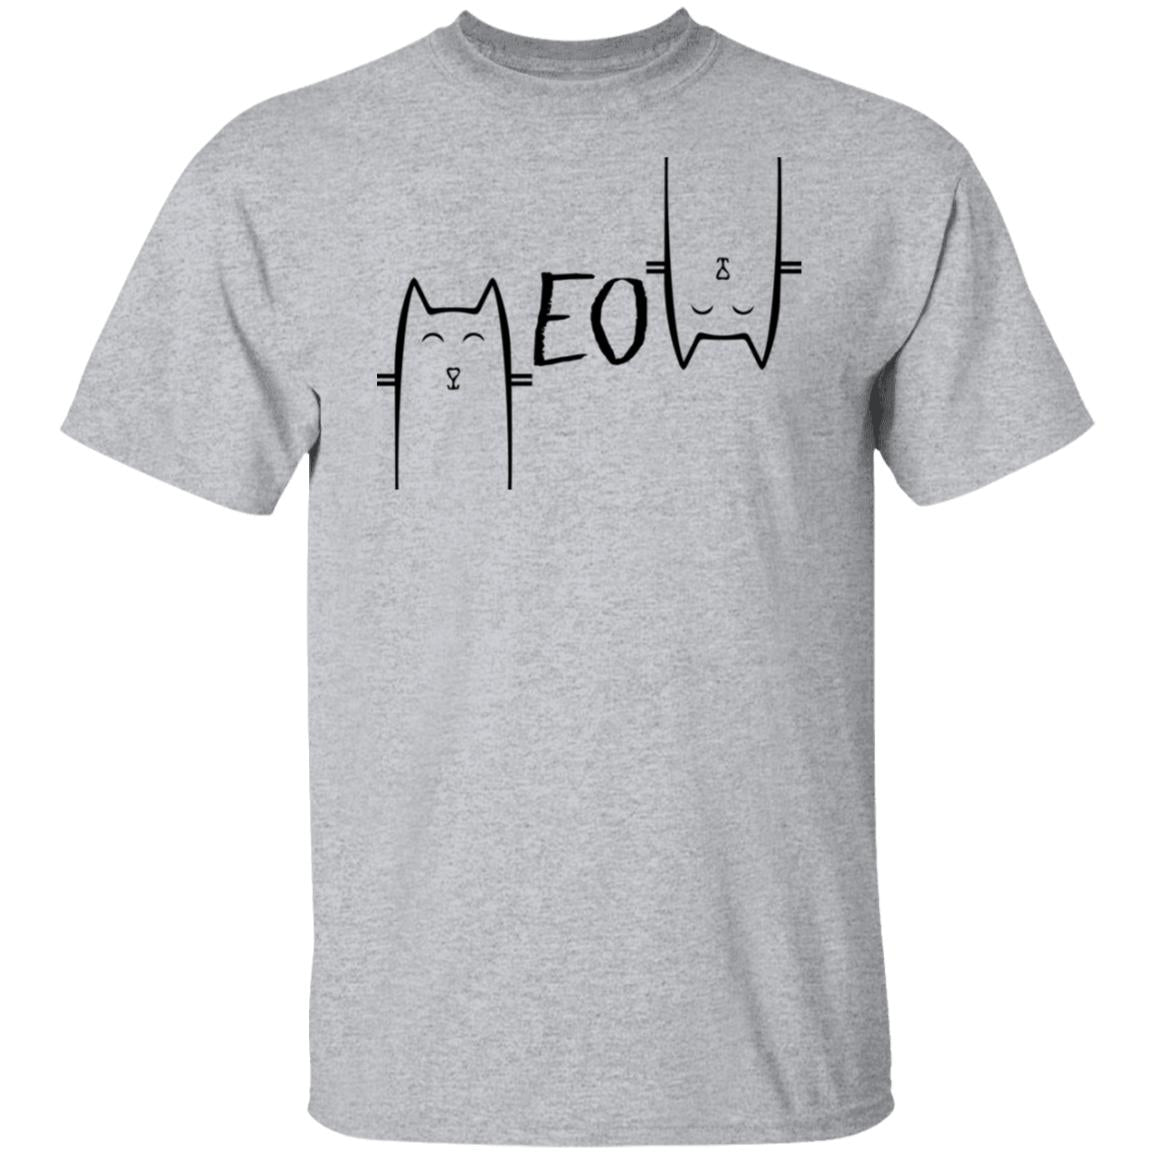 Meow tshirt